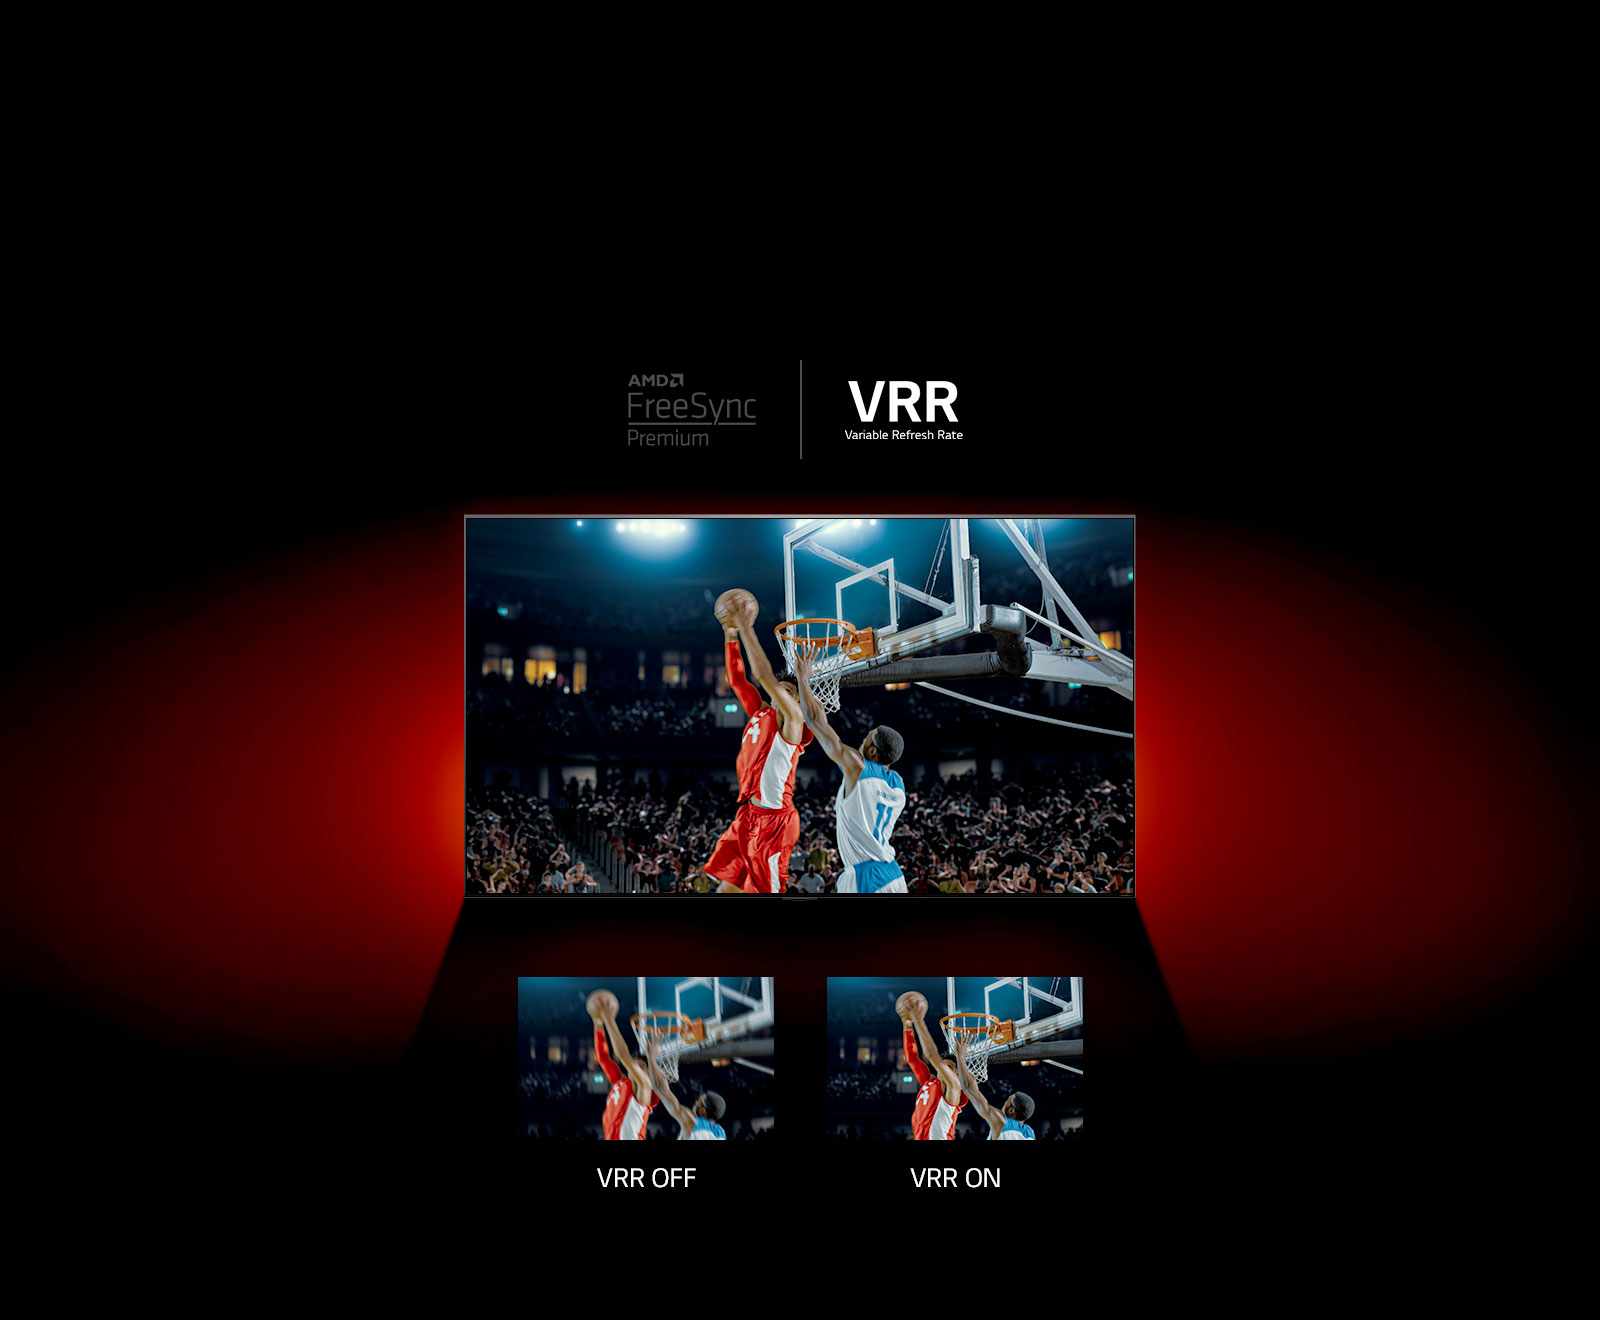 Ви можете побачити телевізор QNEN, що стоїть перед червоною стіною - на зображенні на екрані зображено матч з баскетболу з двома гравцями, які грають. Трохи внизу ви можете побачити дві області зображення. Ліворуч ми можемо побачити текст VRR та розмите зображення тієї ж сцени, а праворуч ми можемо побачити текст VRR та те саме зображення